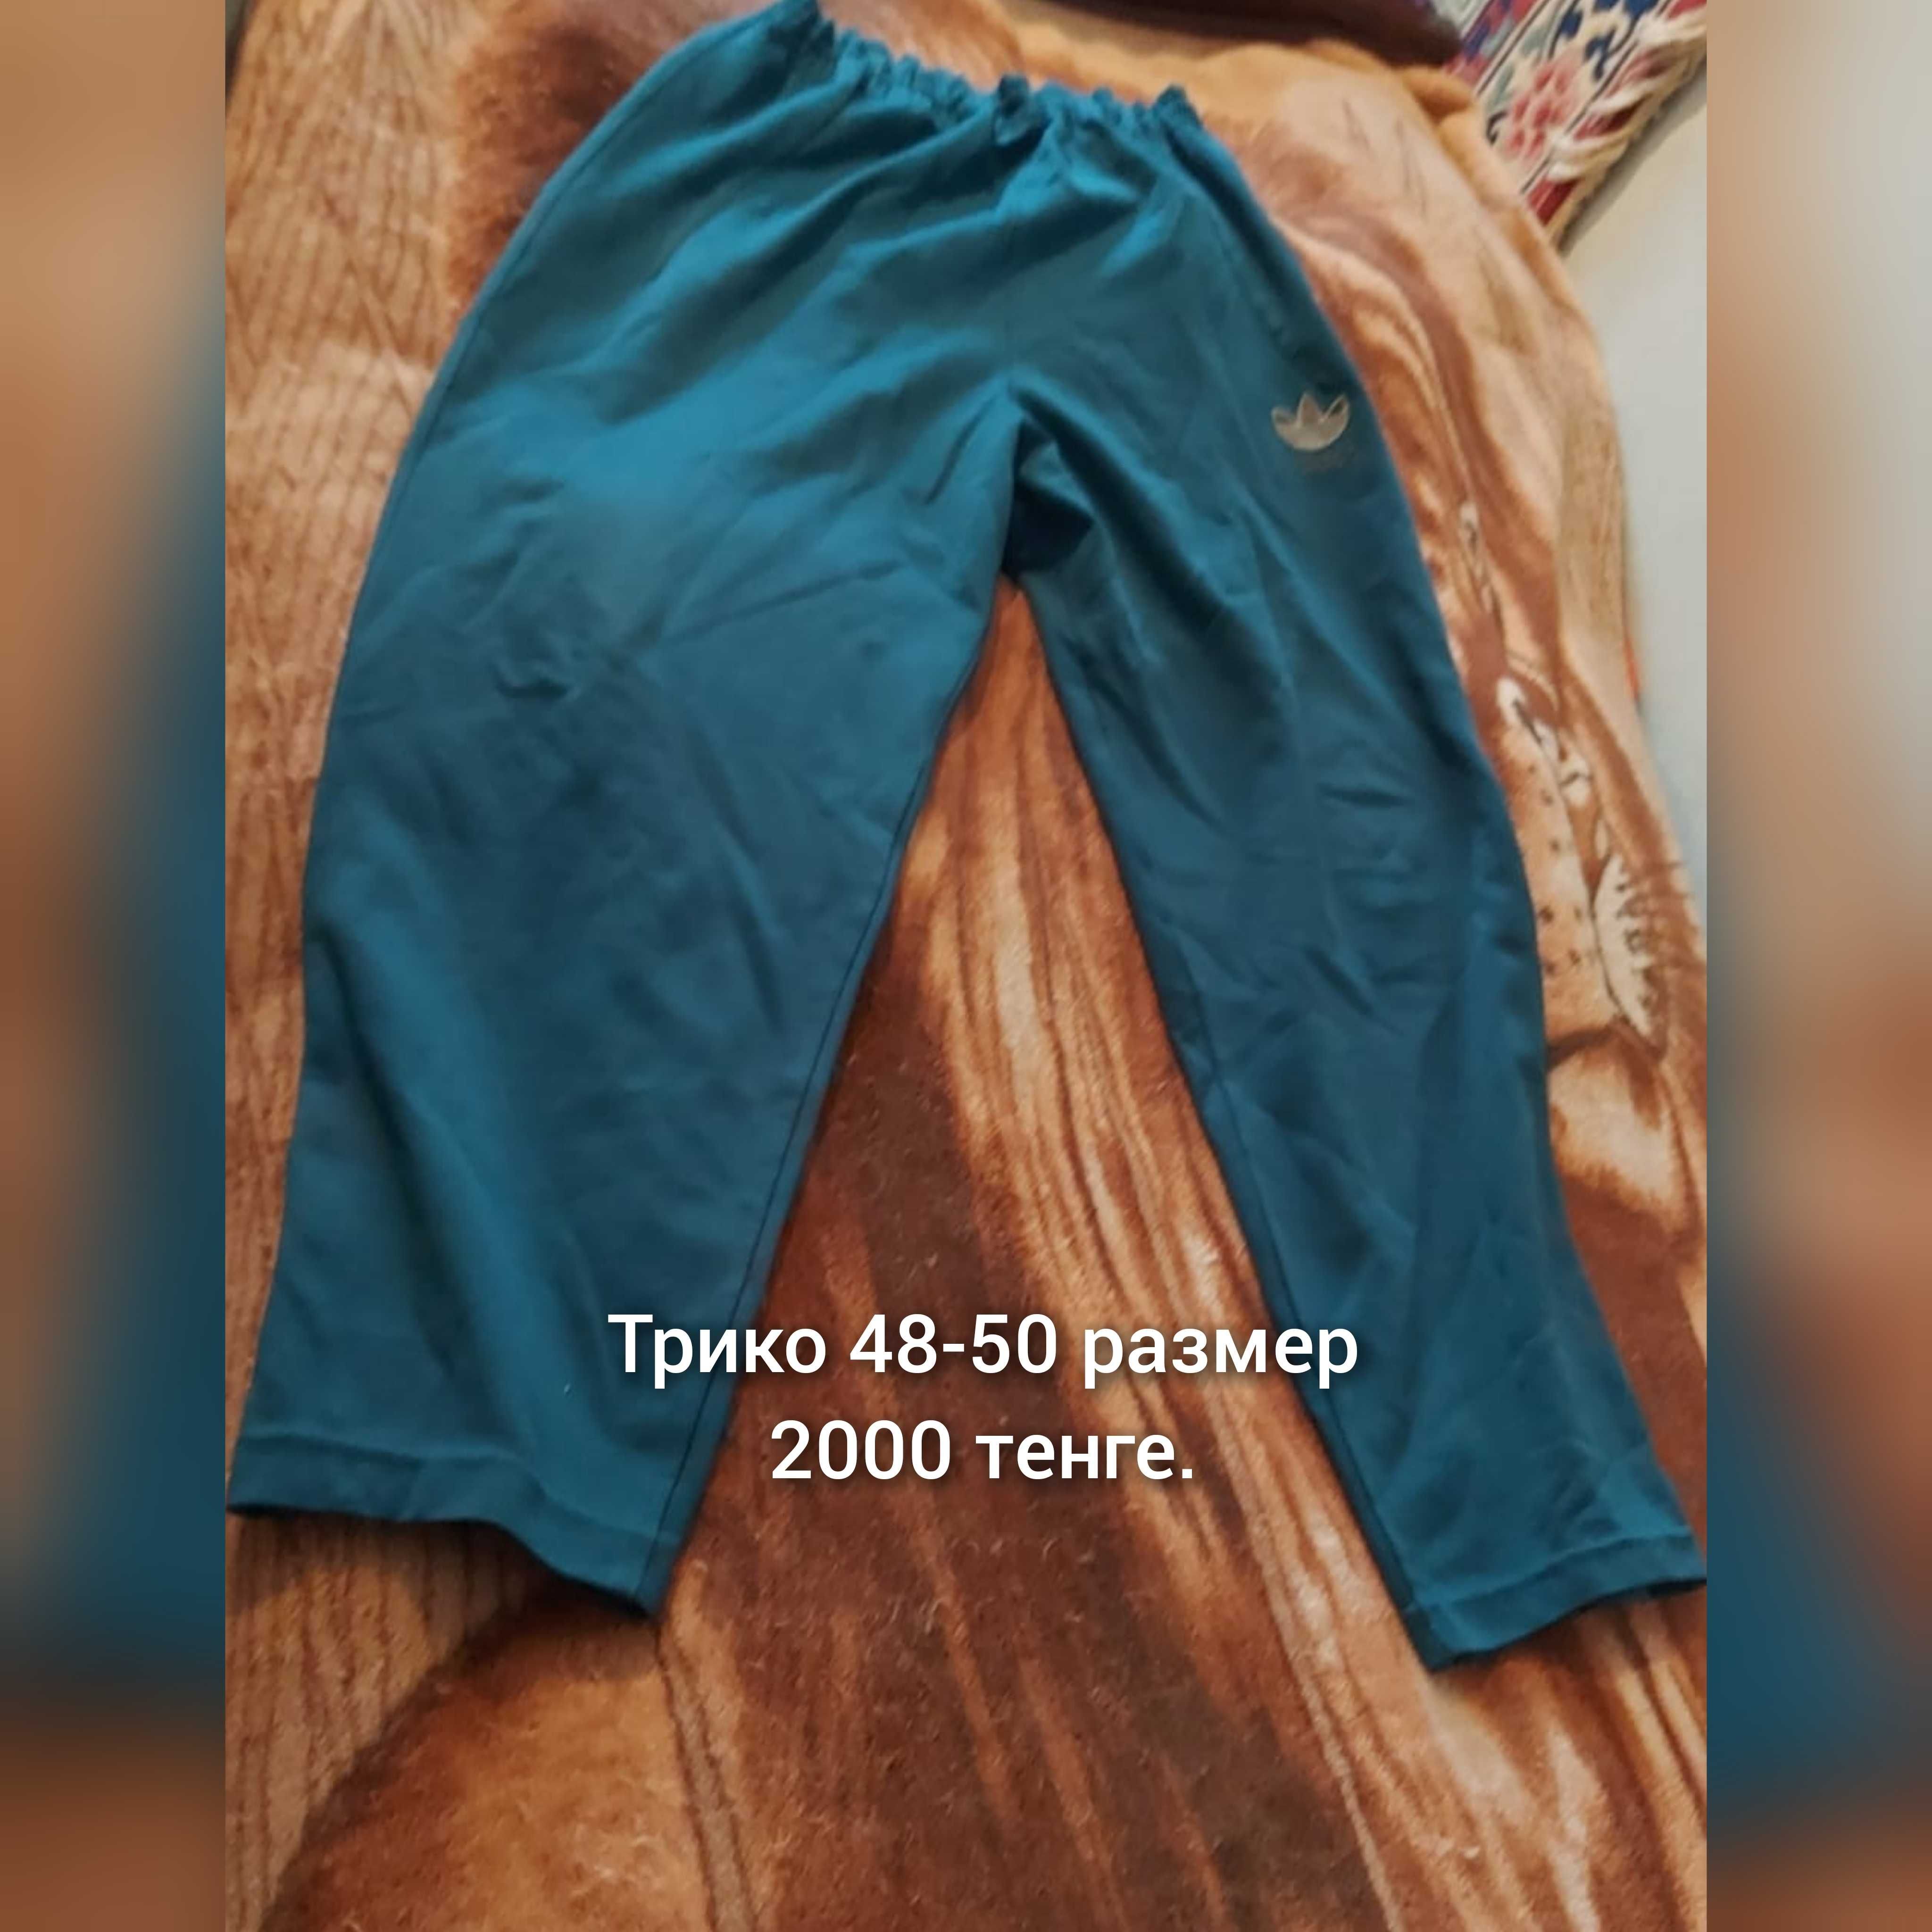 Мужские Футболка брюки  спецовка 54-56 размера трико  для дома работы